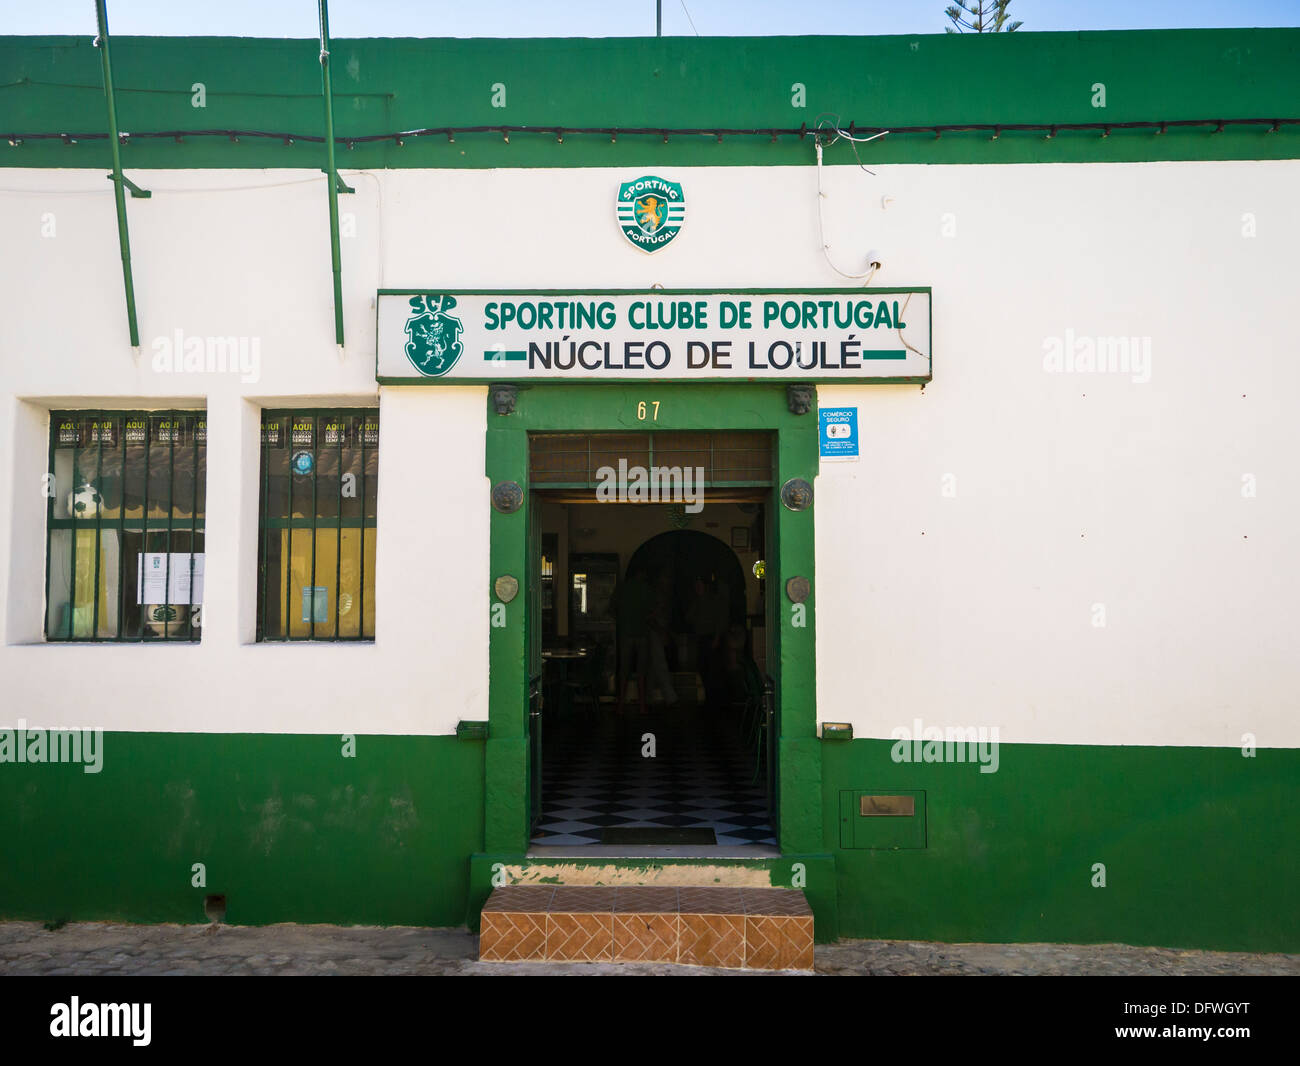 Algarve le Sporting Clube de Portugal Sporting club nucleo de Loule entrée ouverte porte drapeau vert et blanc l'étape étapes pavés pavés de galets Banque D'Images